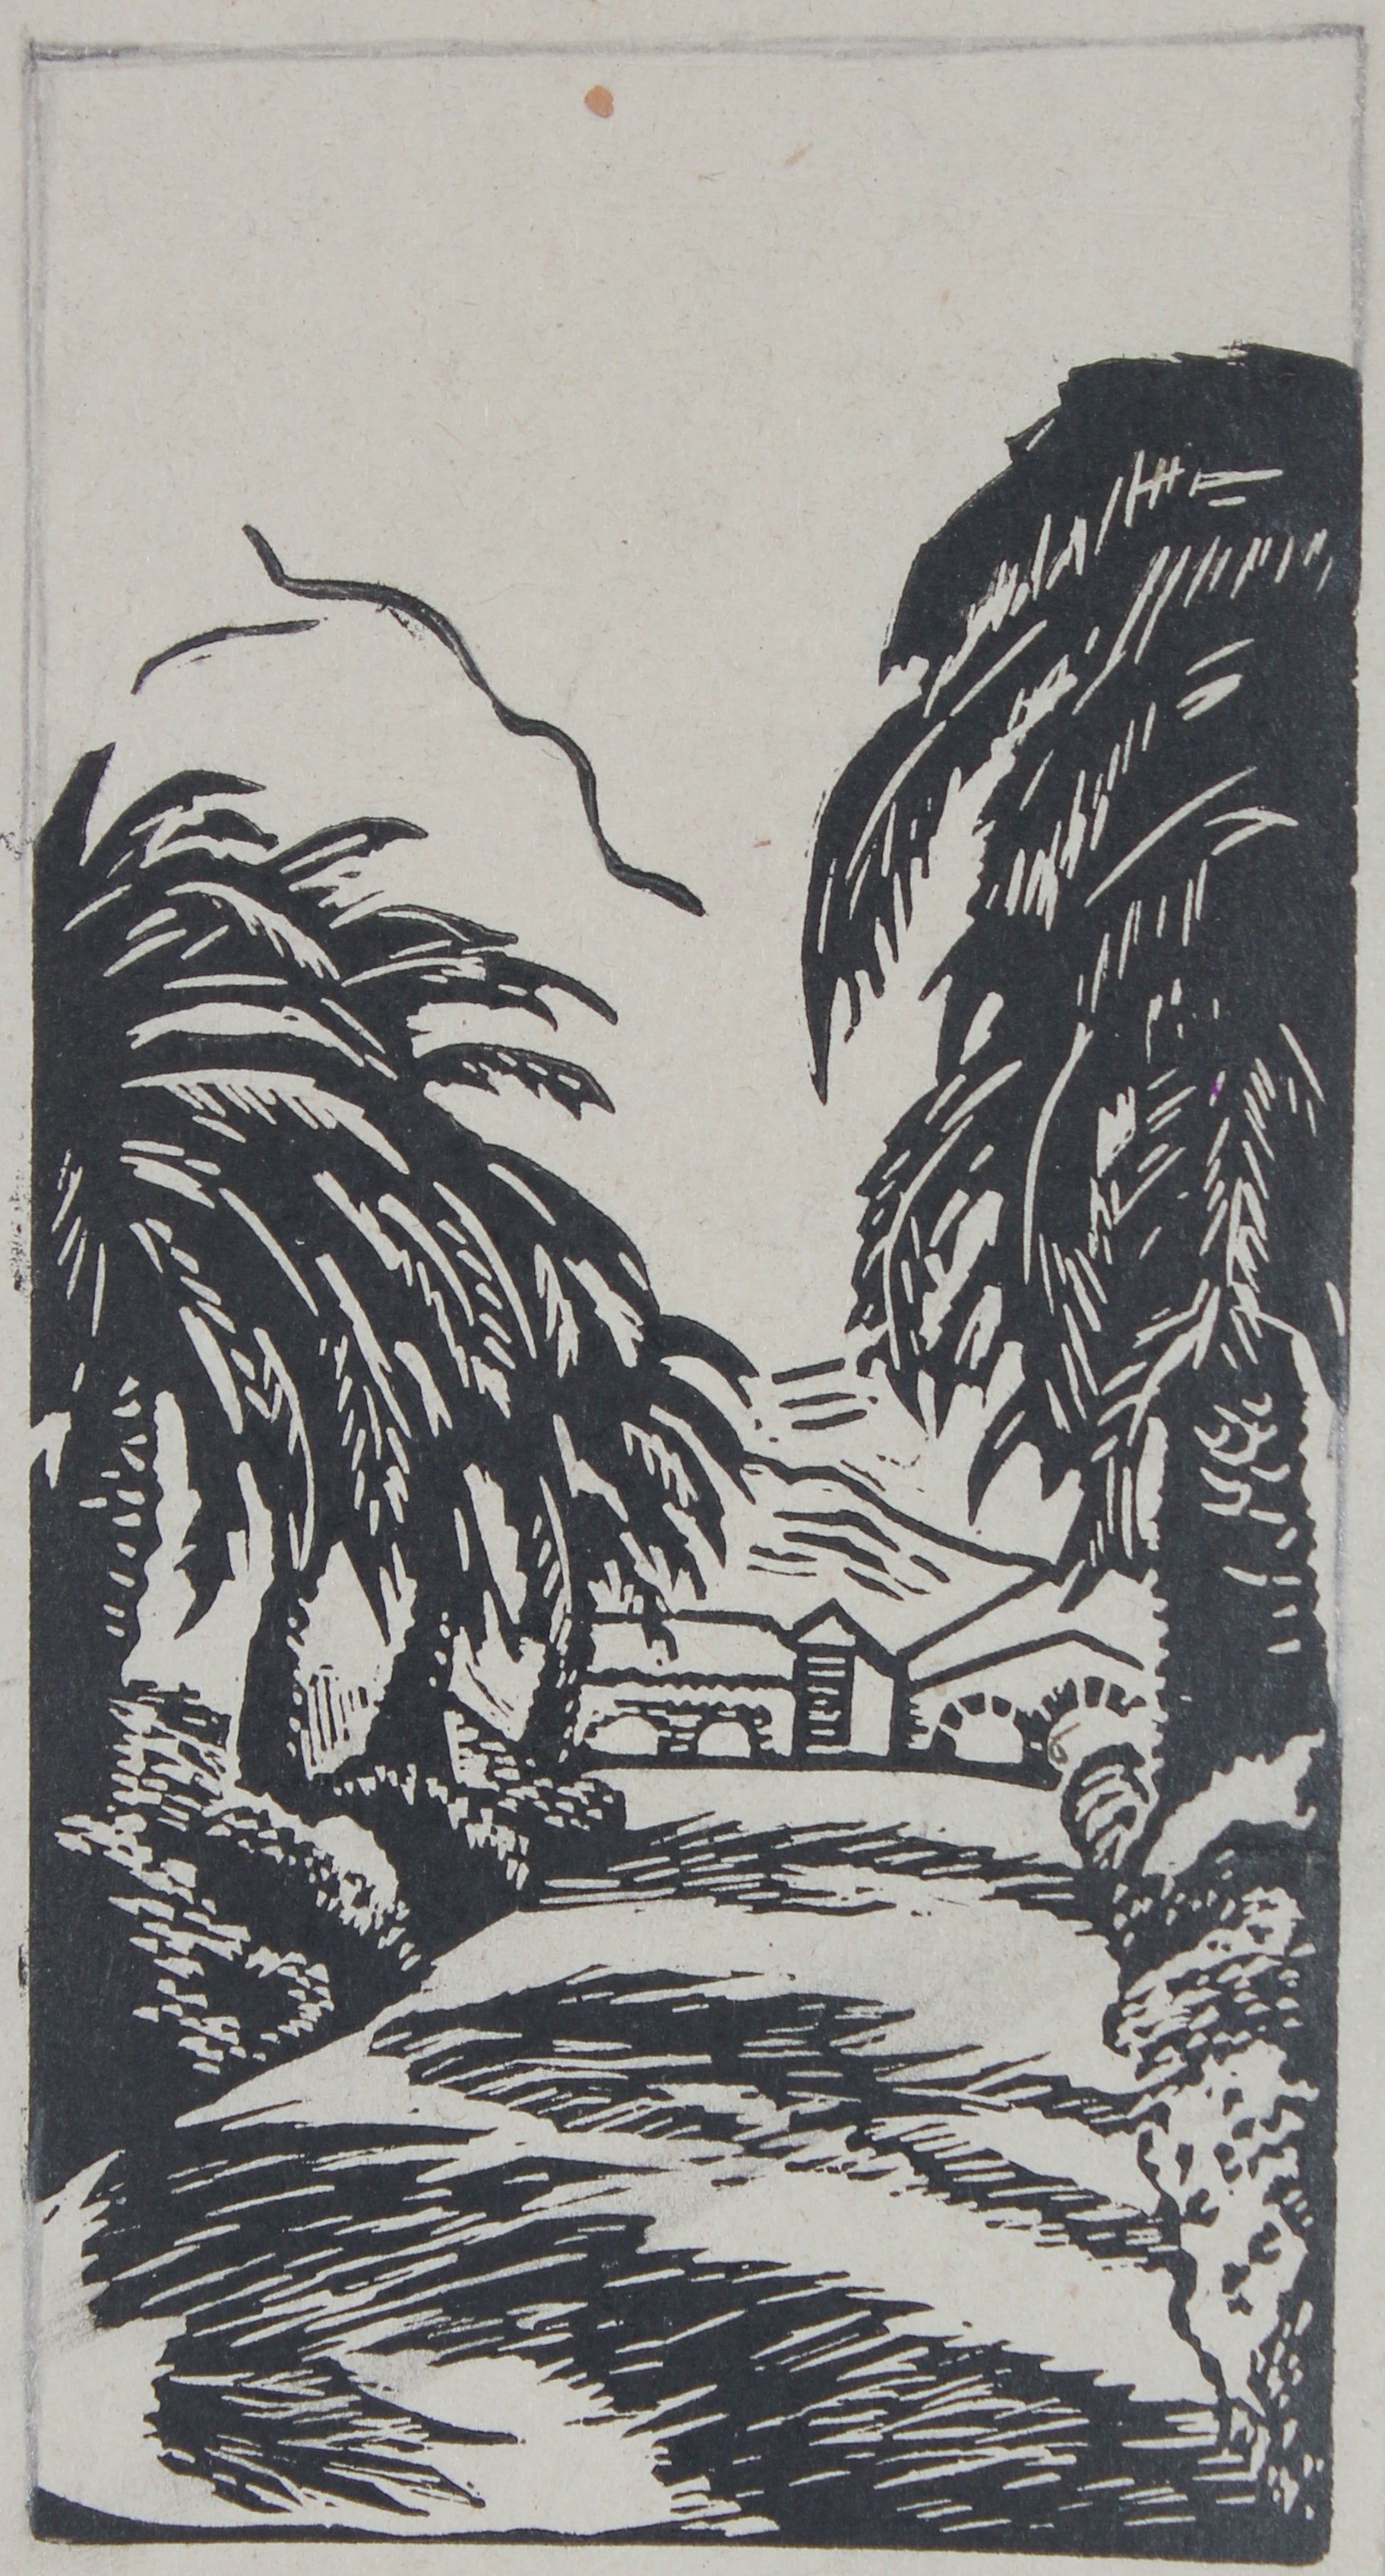 Vintage Palo Alto, CA Scene <br>1940s Linoleum Block Print <br><br>#68240